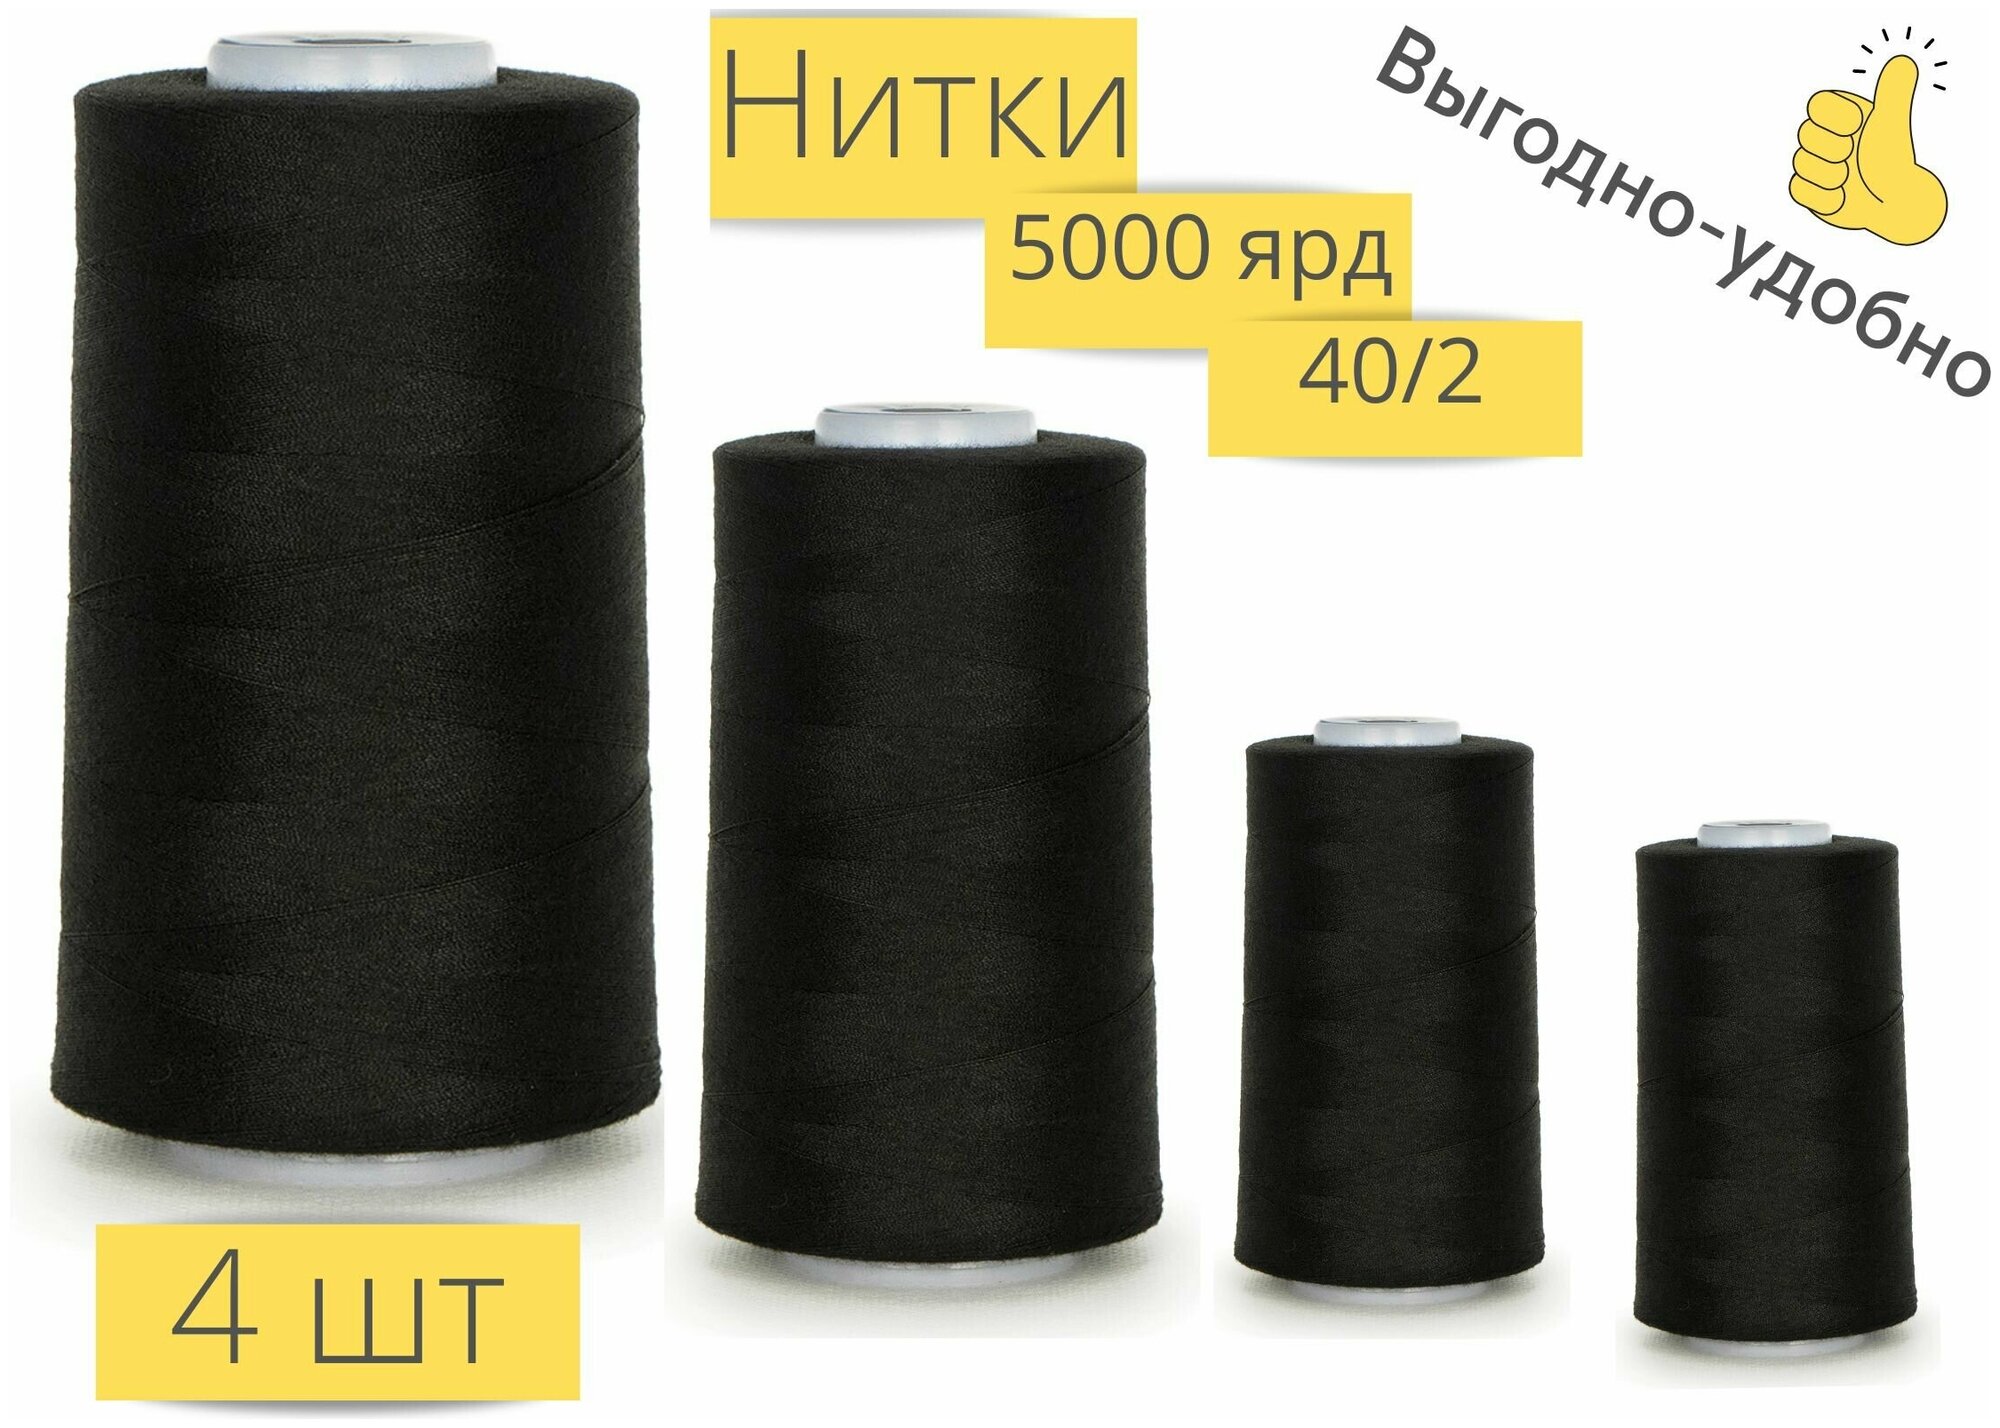 Нитки для шитья 40/2  5000 ярдов черные набор 4 штуки